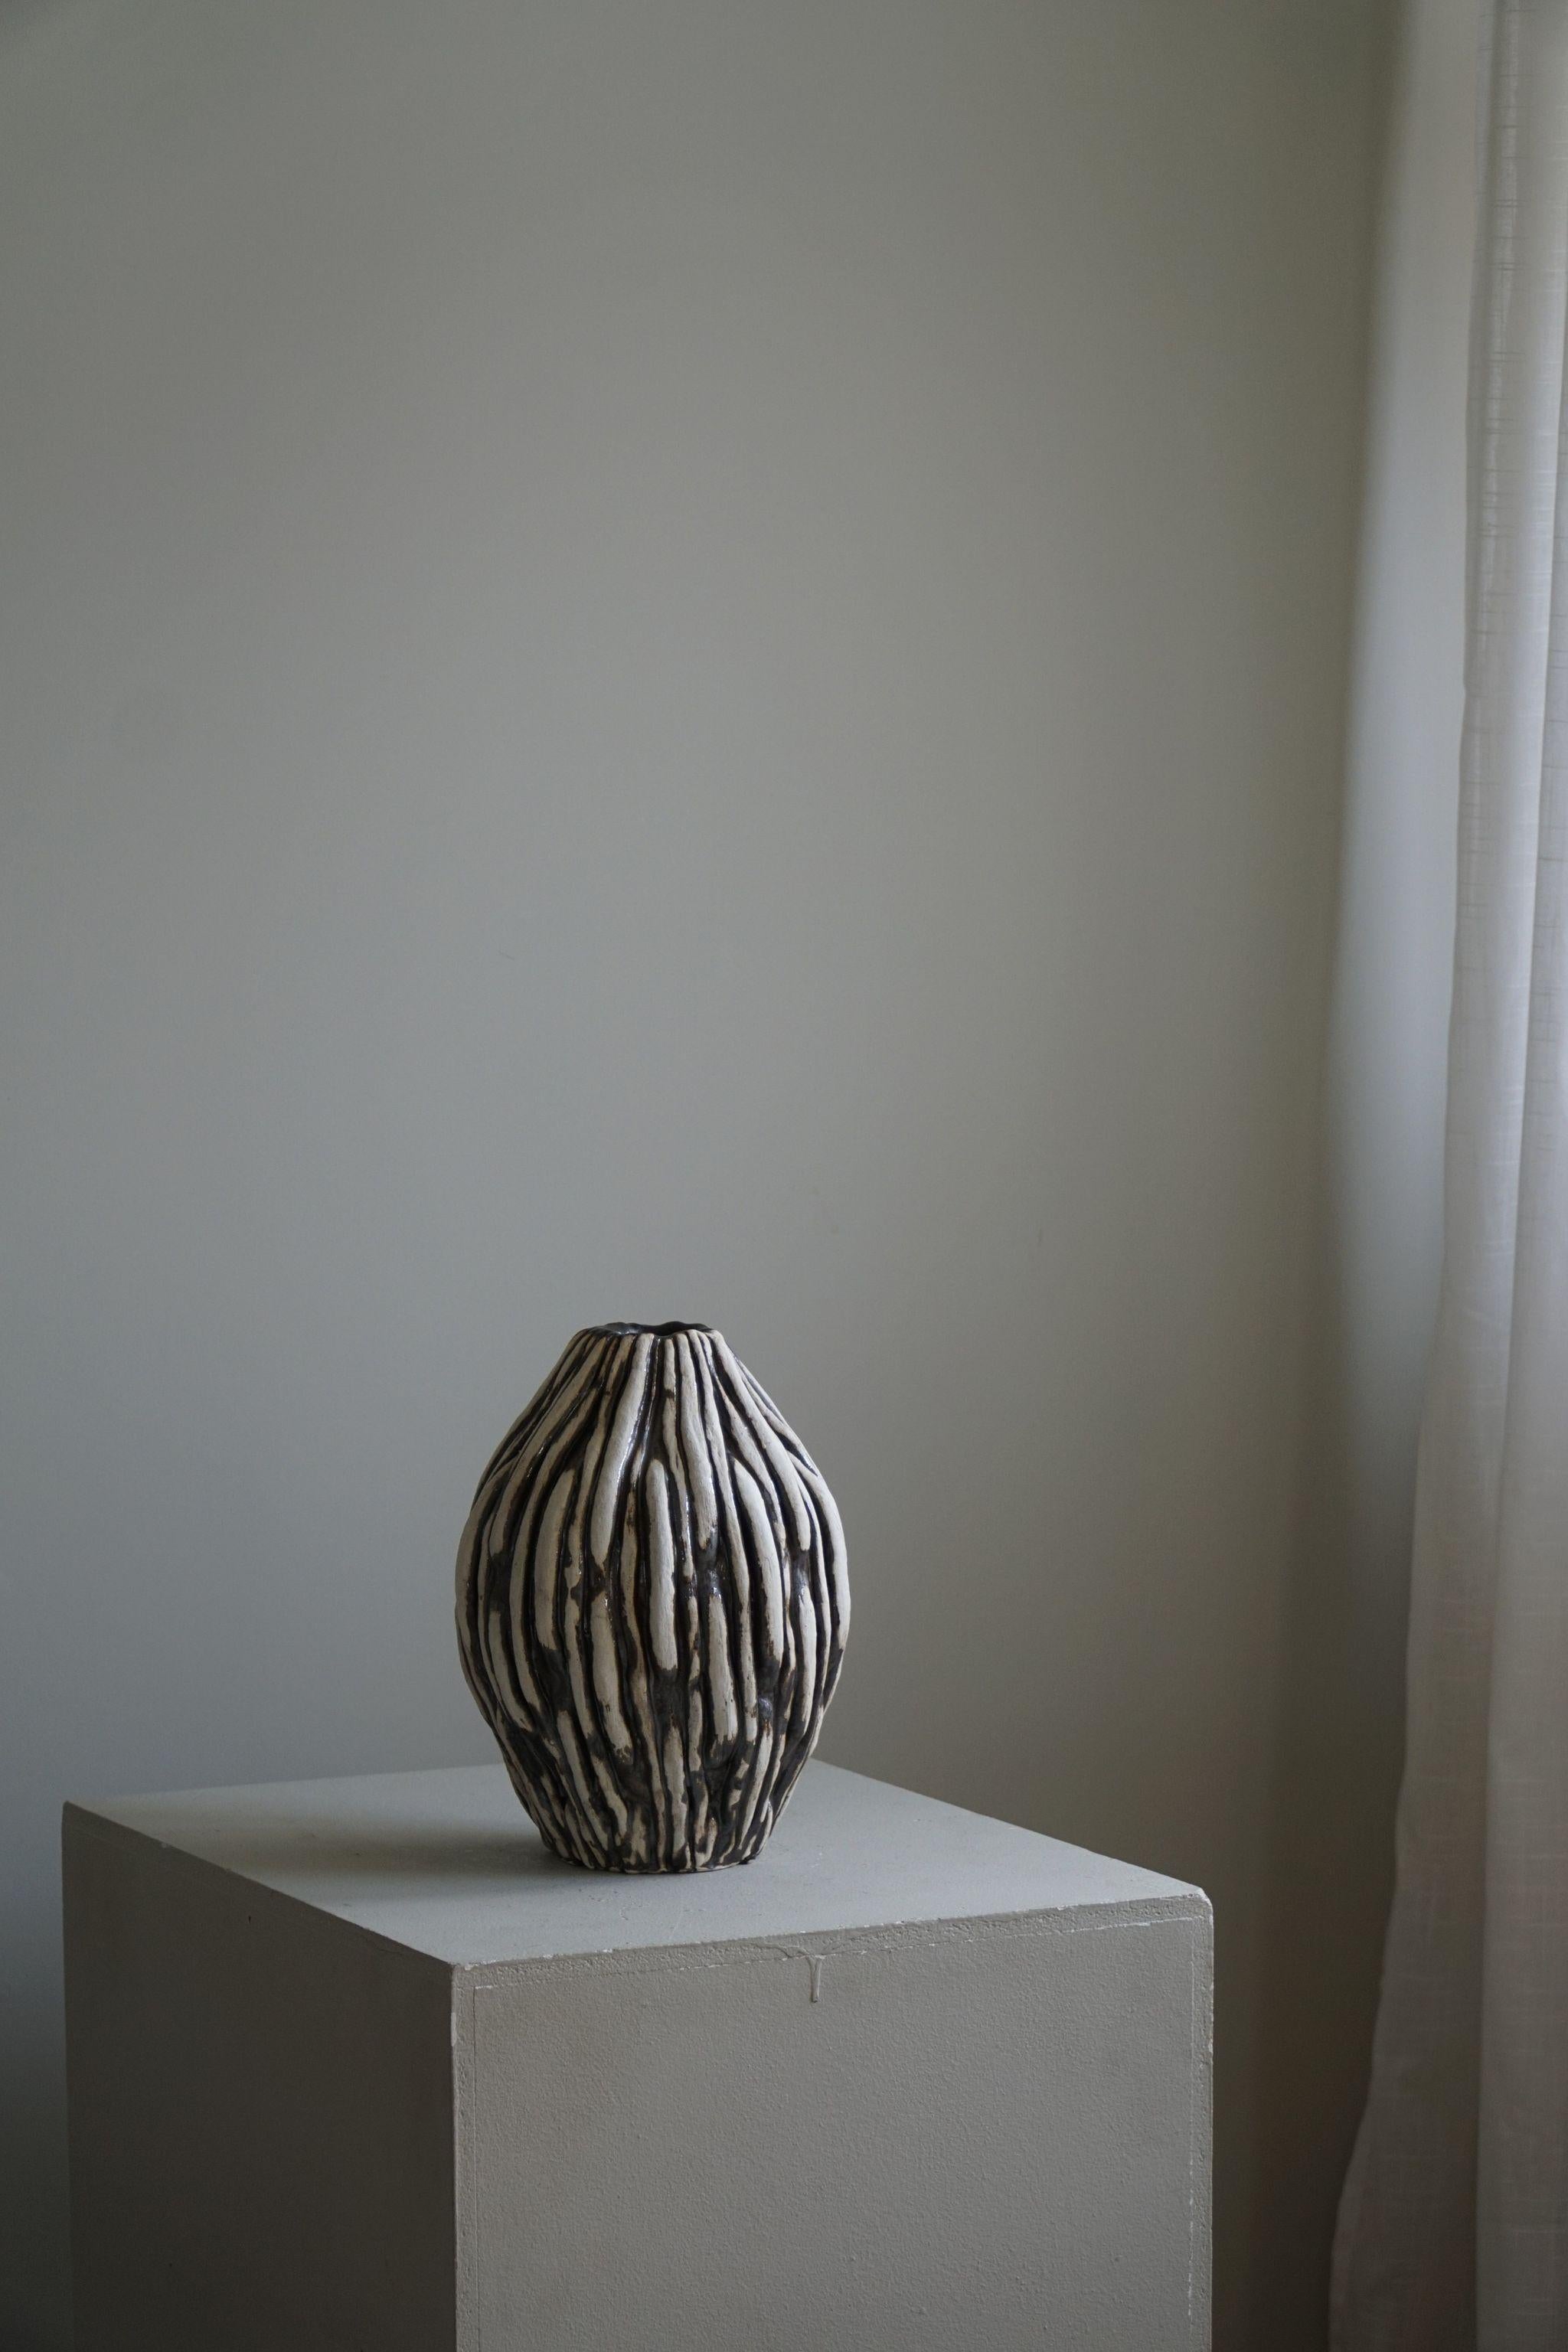 Grand vase en céramique avec glaçure dans des variations de couleurs blanches, beiges et bronze, réalisé par l'artiste danois Ole Victor, 2024.

Ole Victor est un artiste danois qui a fréquenté l'Art Academy entre 1975 et 1980. Depuis, il crée des